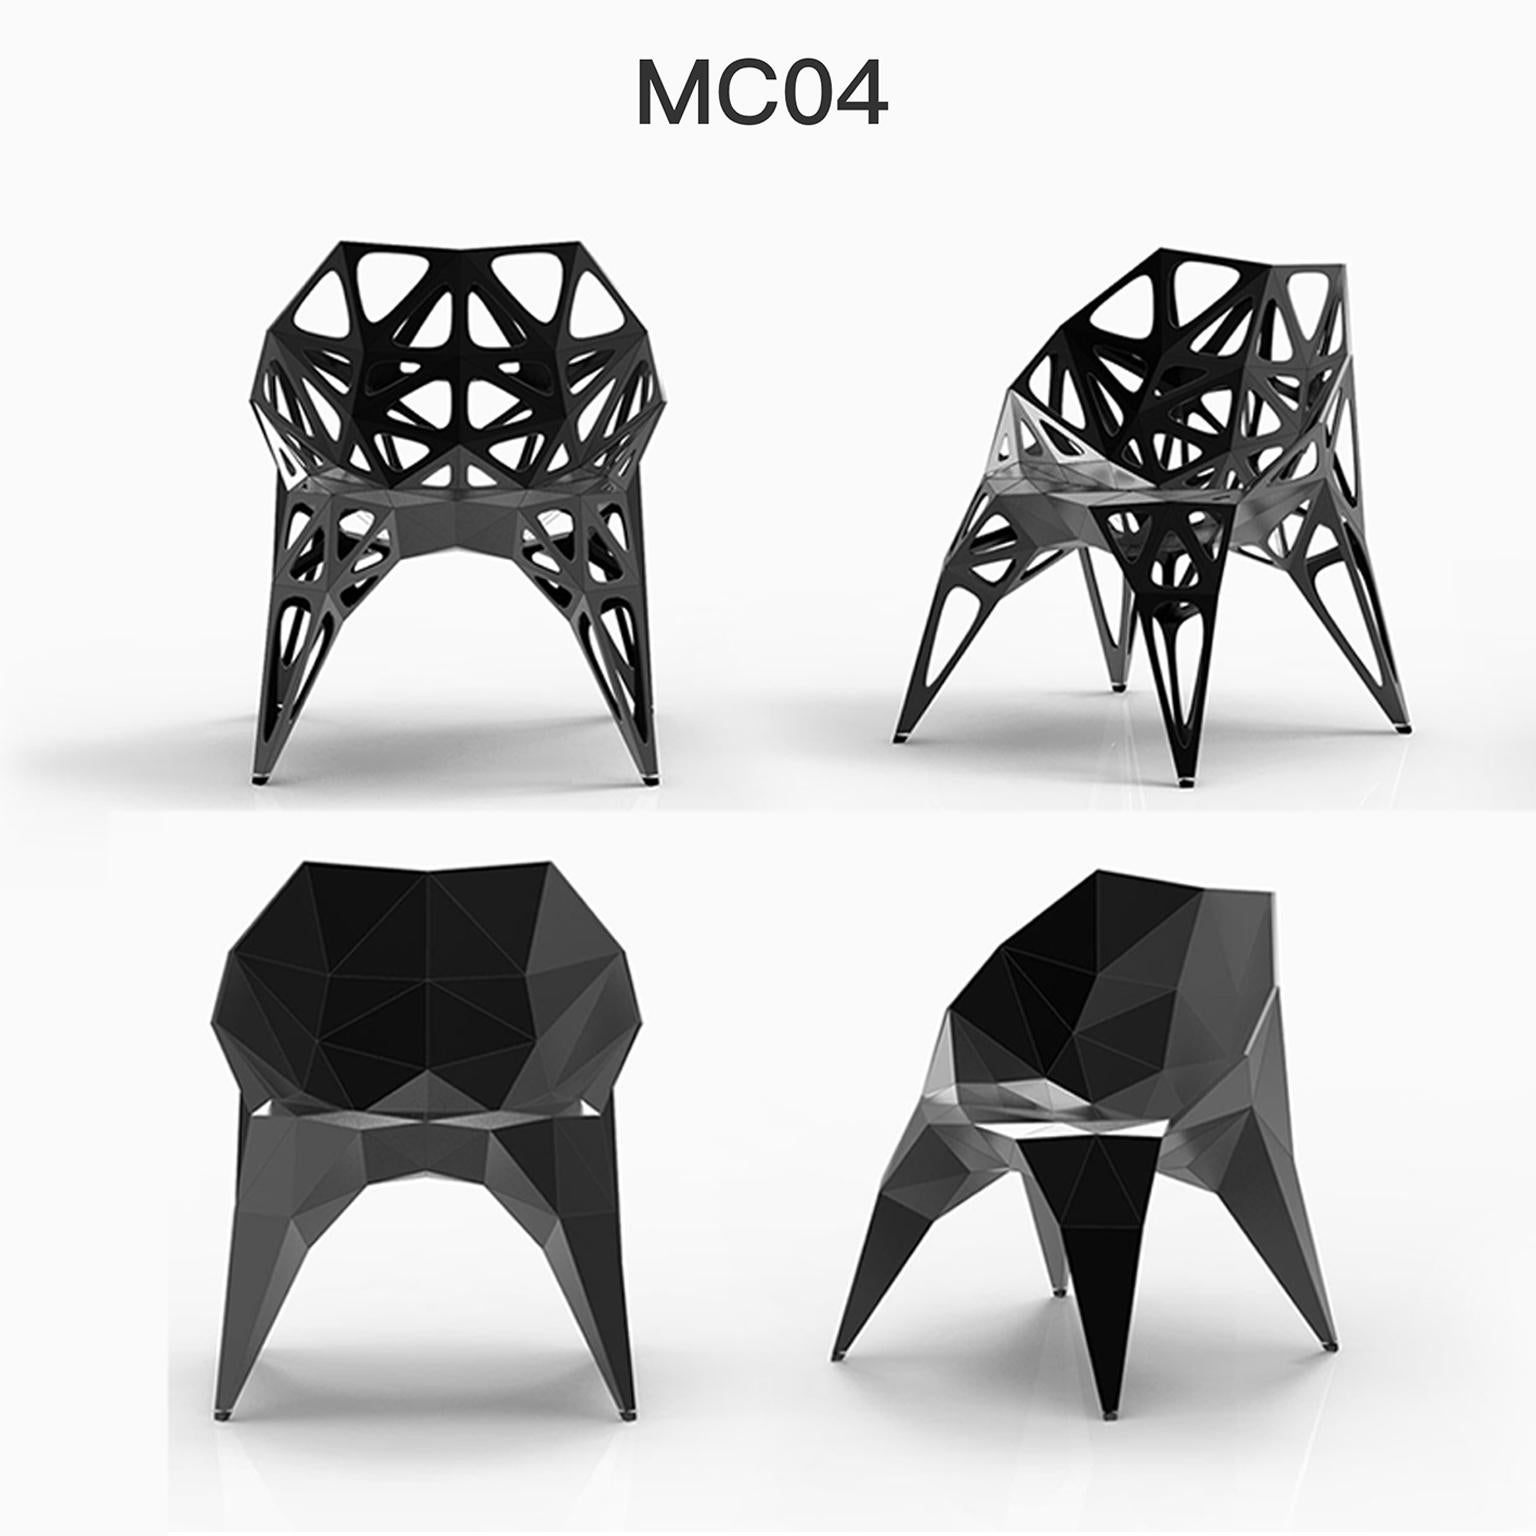 Draußen und drinnen
3 offizielle Typen Stühle / verfügbar
Solide
Dots
Rahmen
2 Farben offiziell / verfügbar / Ausführung in poliert/matt
Schwarz
Silber
    
Der Möbeldesigner Zhoujie Zhang ist bekannt für die Integration von automatisiertem